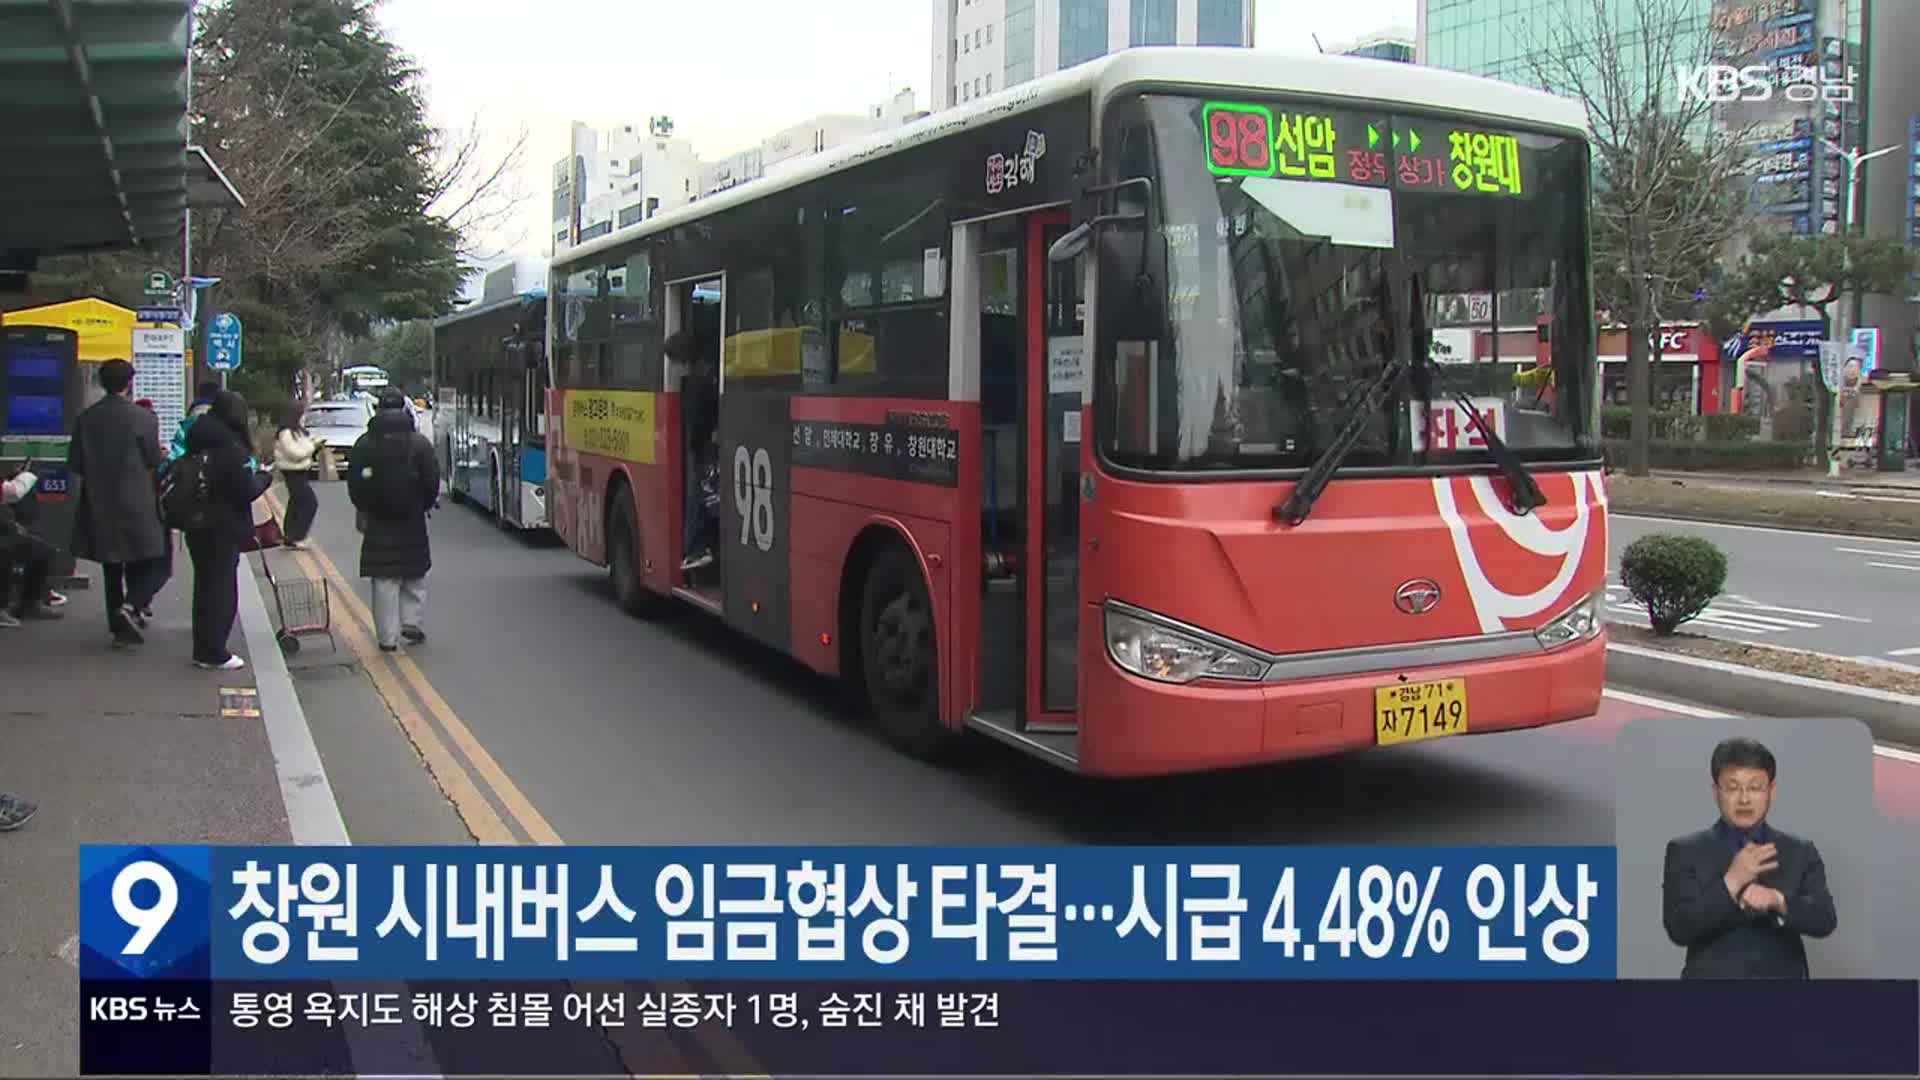 창원 시내버스 임금협상 타결…시급 4.48% 인상